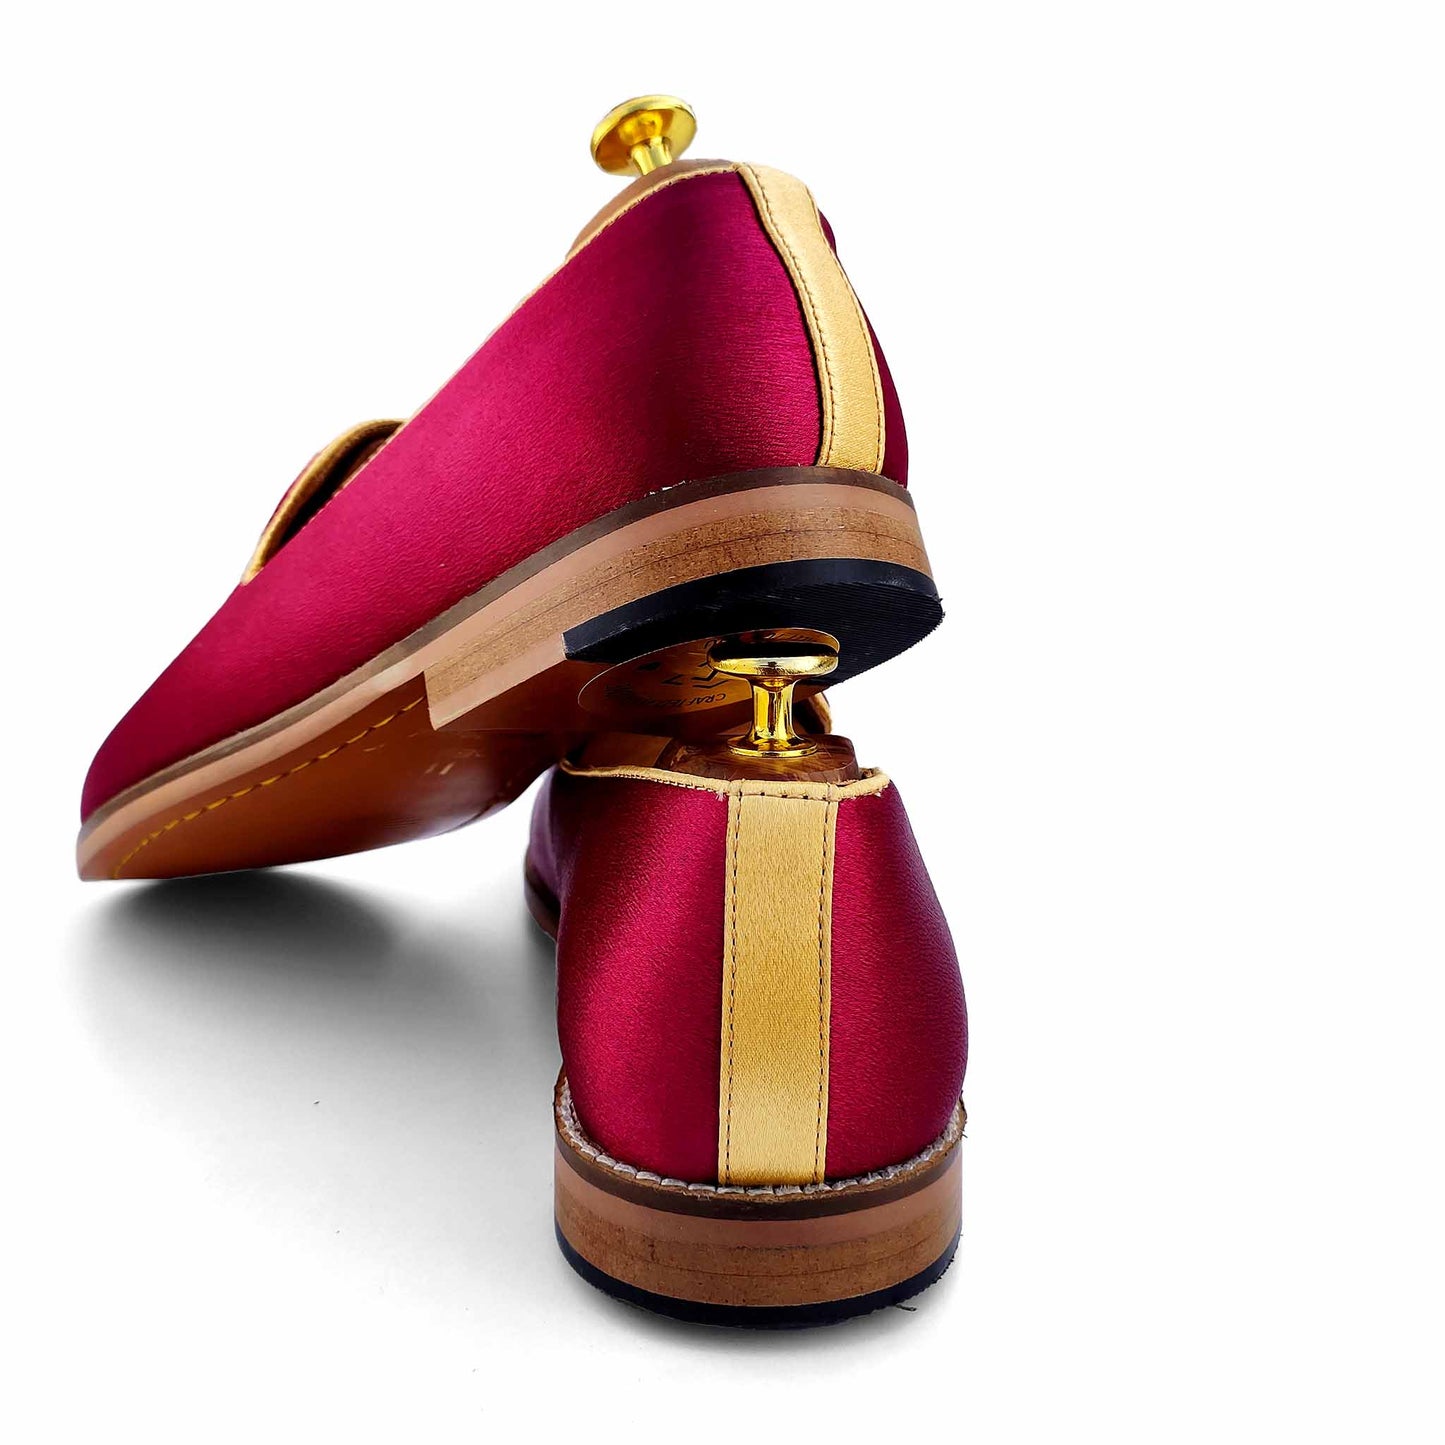 Maroon Golden Zardozi Handwork Wedding Ethnic Shoes Loafers for Men